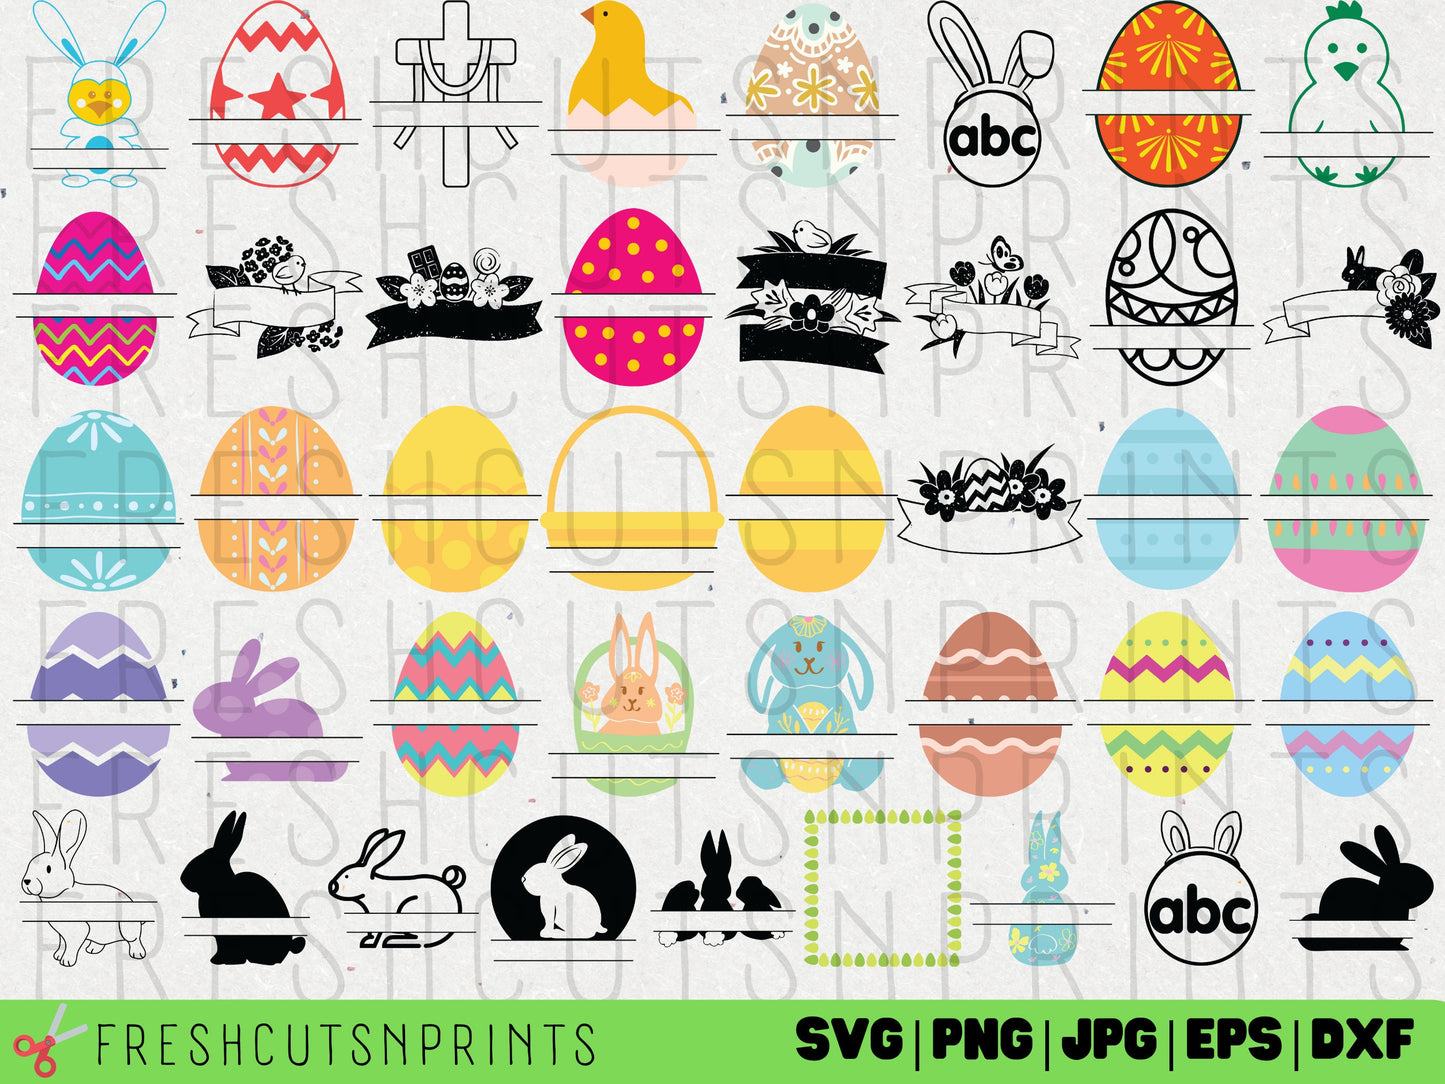 41 Easter Monogram SVG Bundle, Easter Monograms, Easter SVG, Split Monogram svg, Easter Vector Art, Easter Designs svg, Easter Egg svg